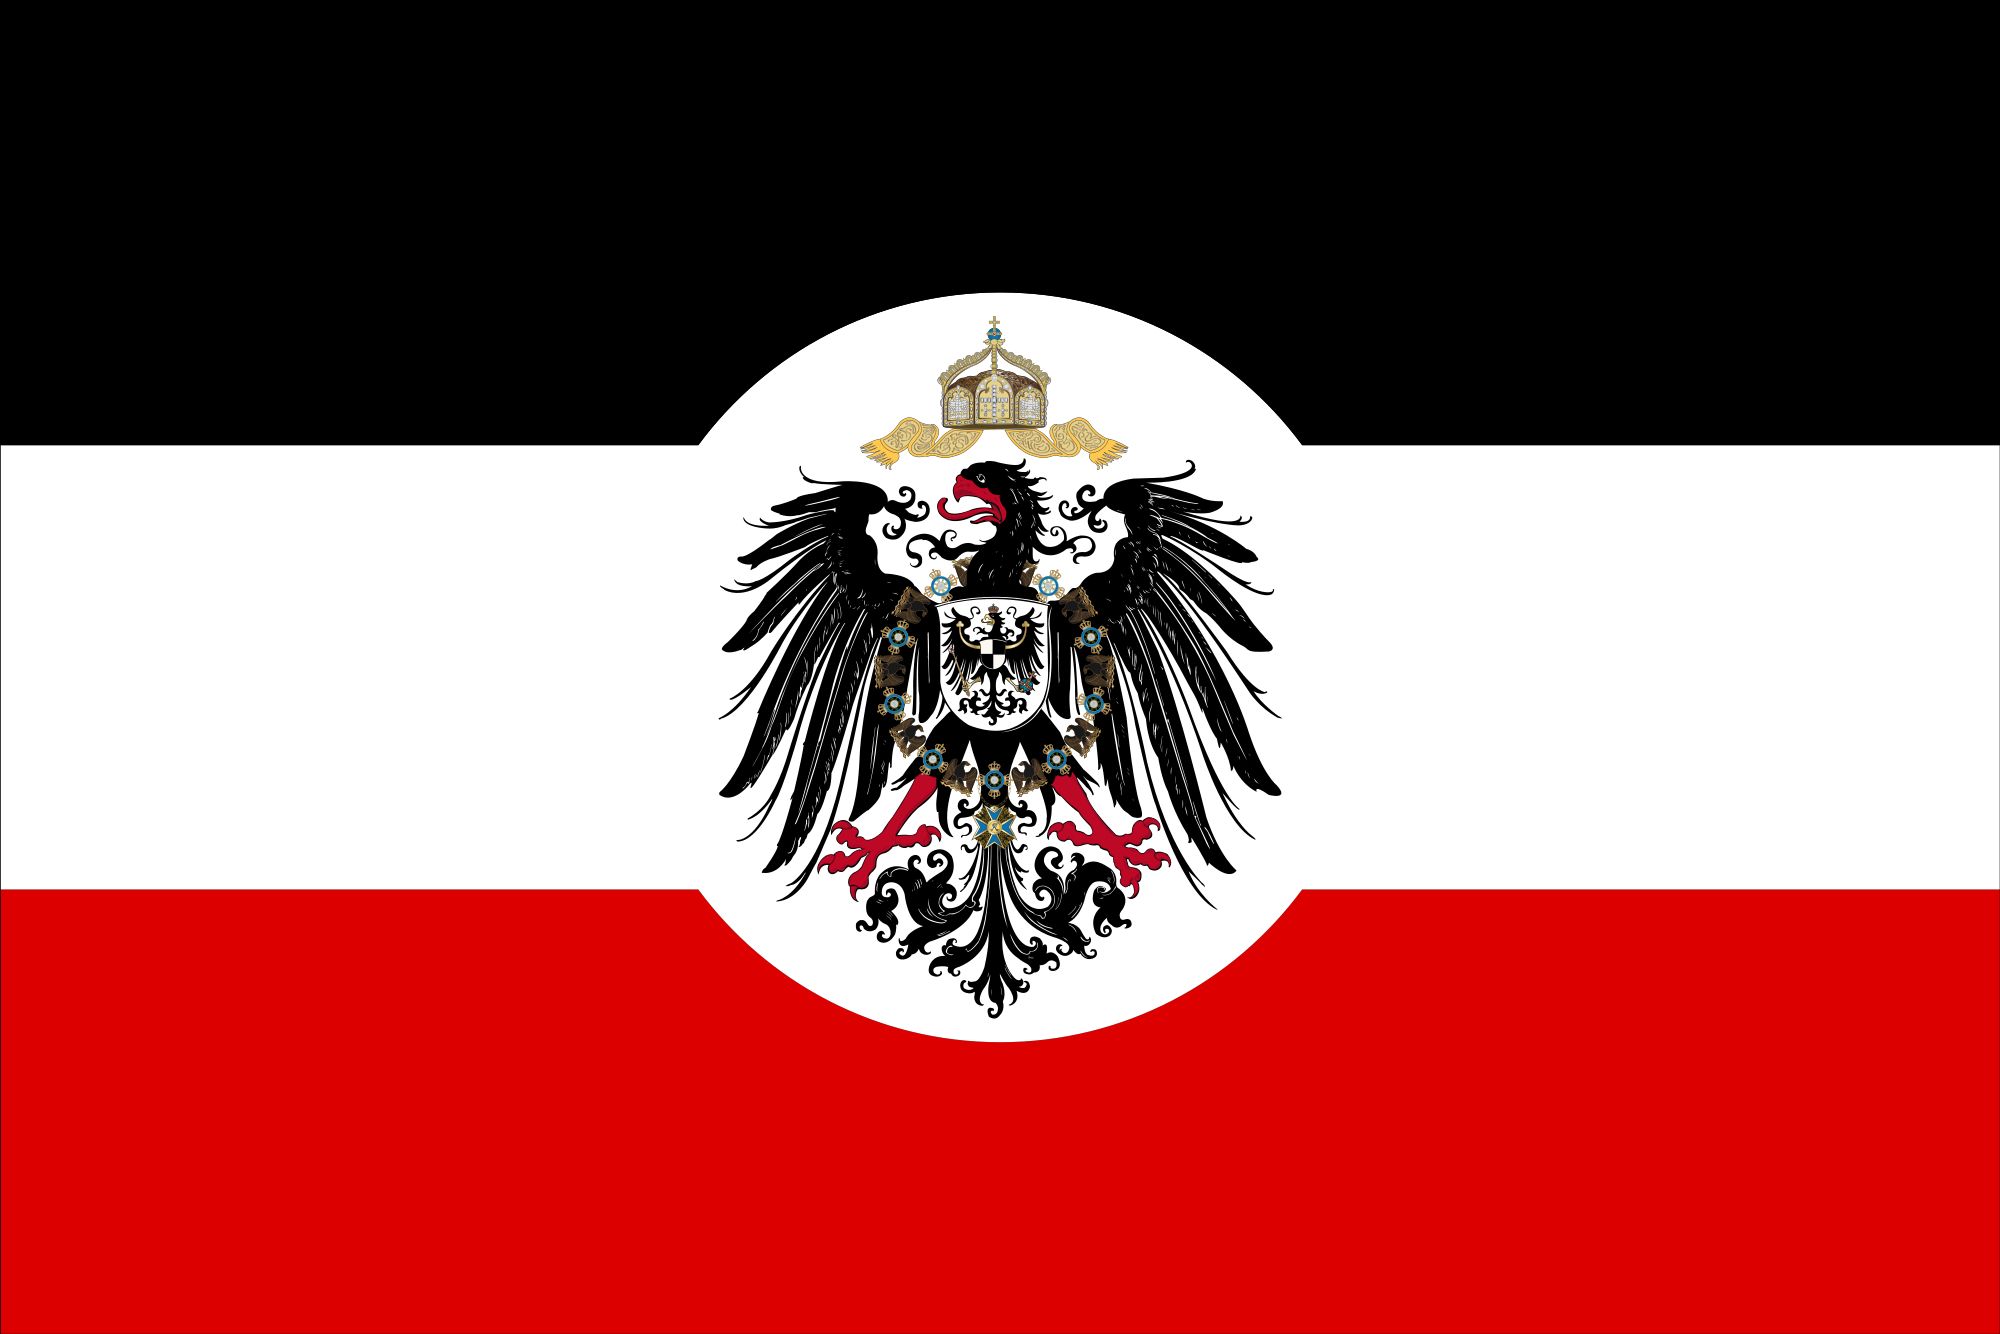 Флаг старой германии. Флаг германской империи 1914 года. Флаг германской империи кайзеррейх. Флаг германской империи при Бисмарке. Флаг монархической Германии.